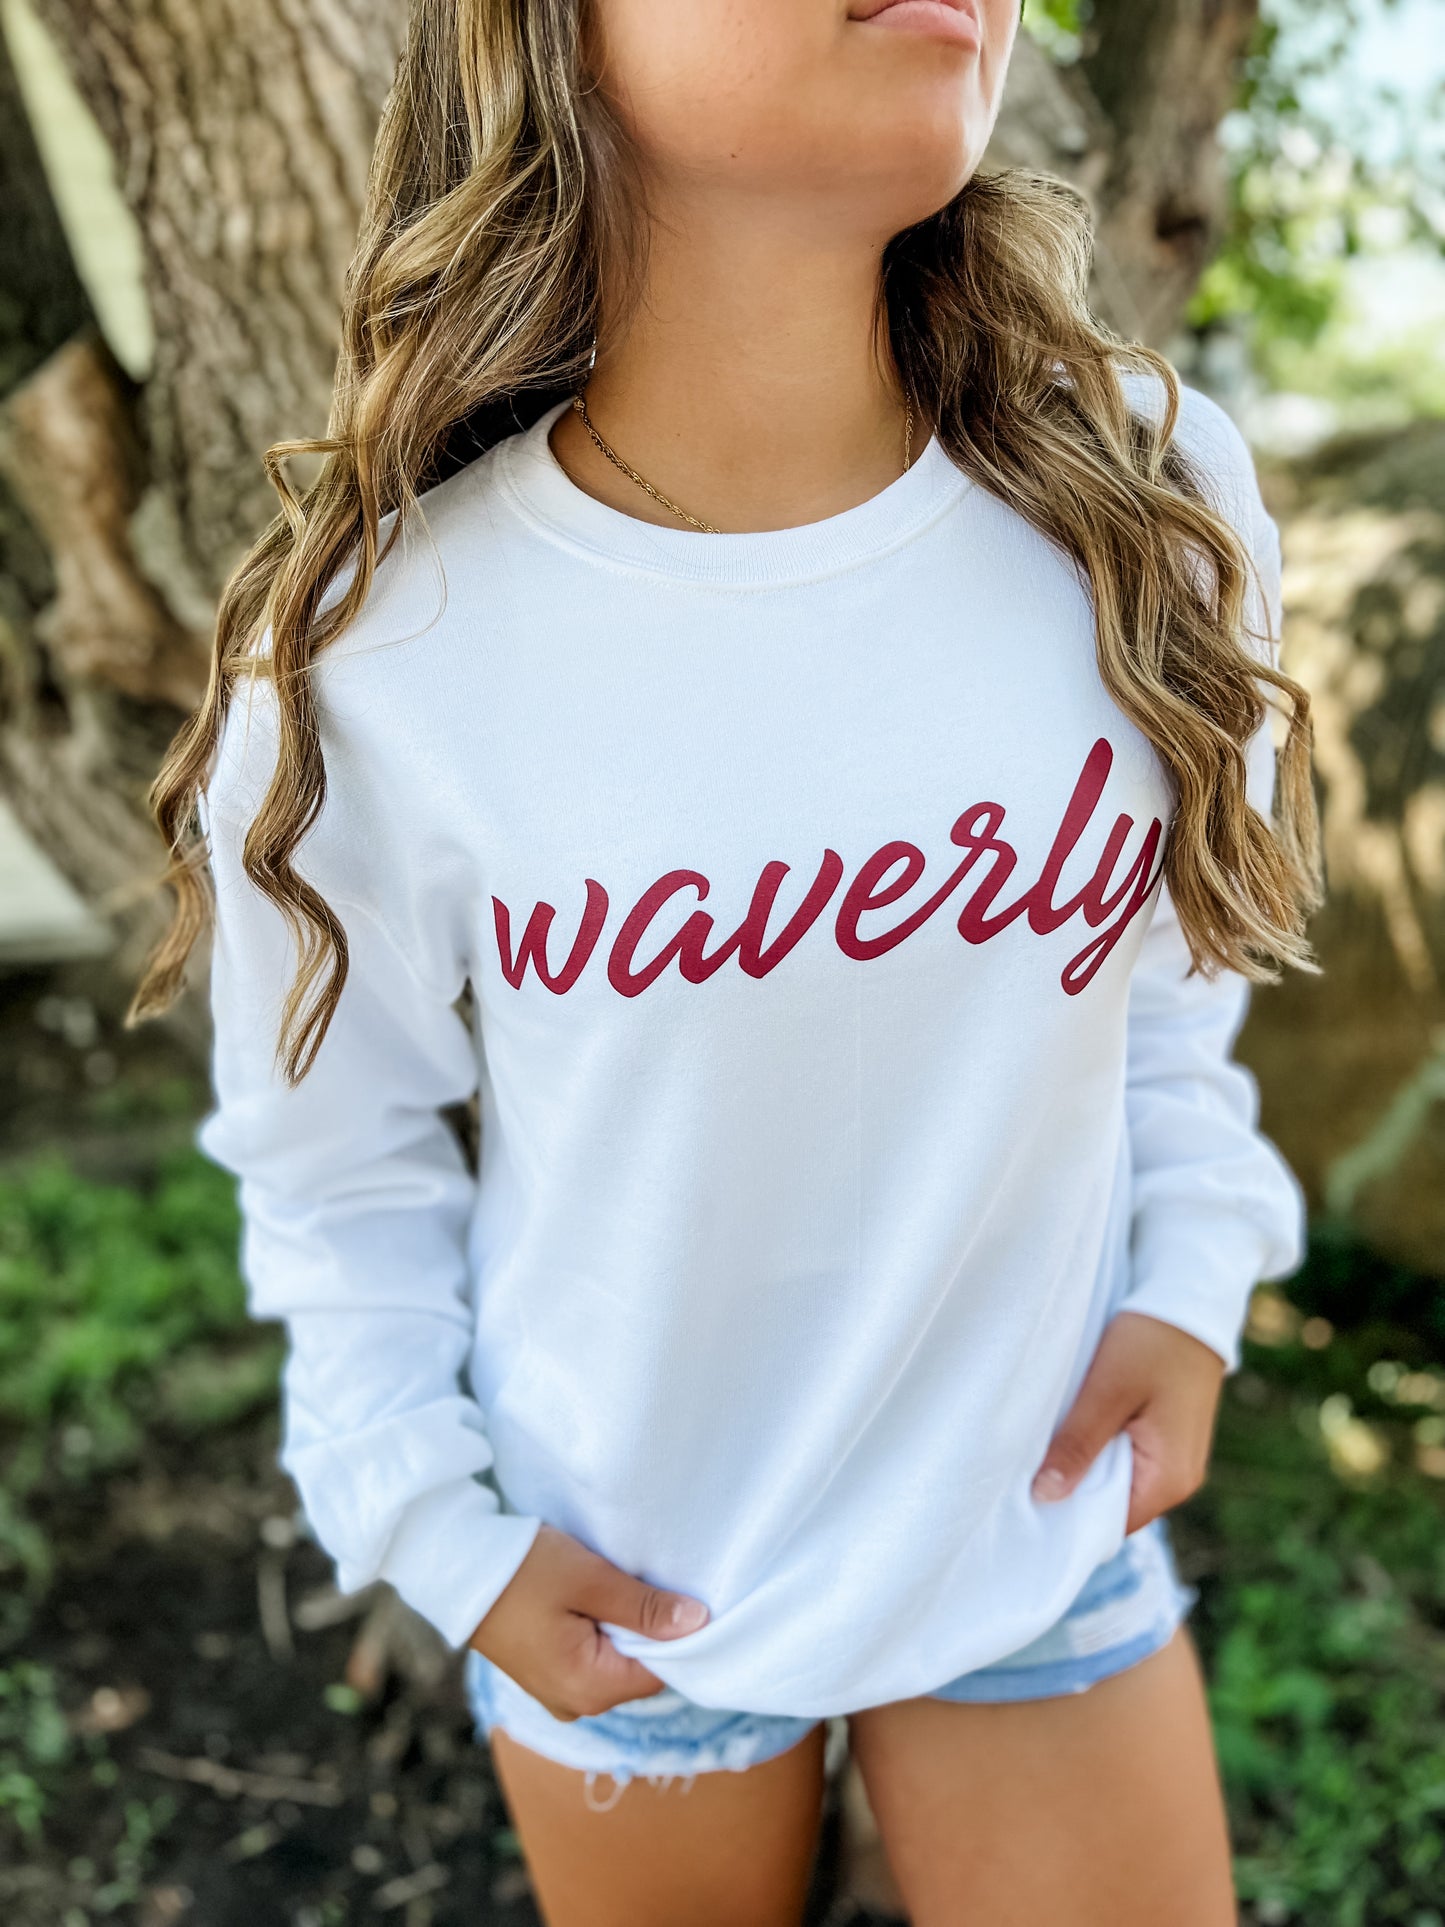 Waverly. Crew- White